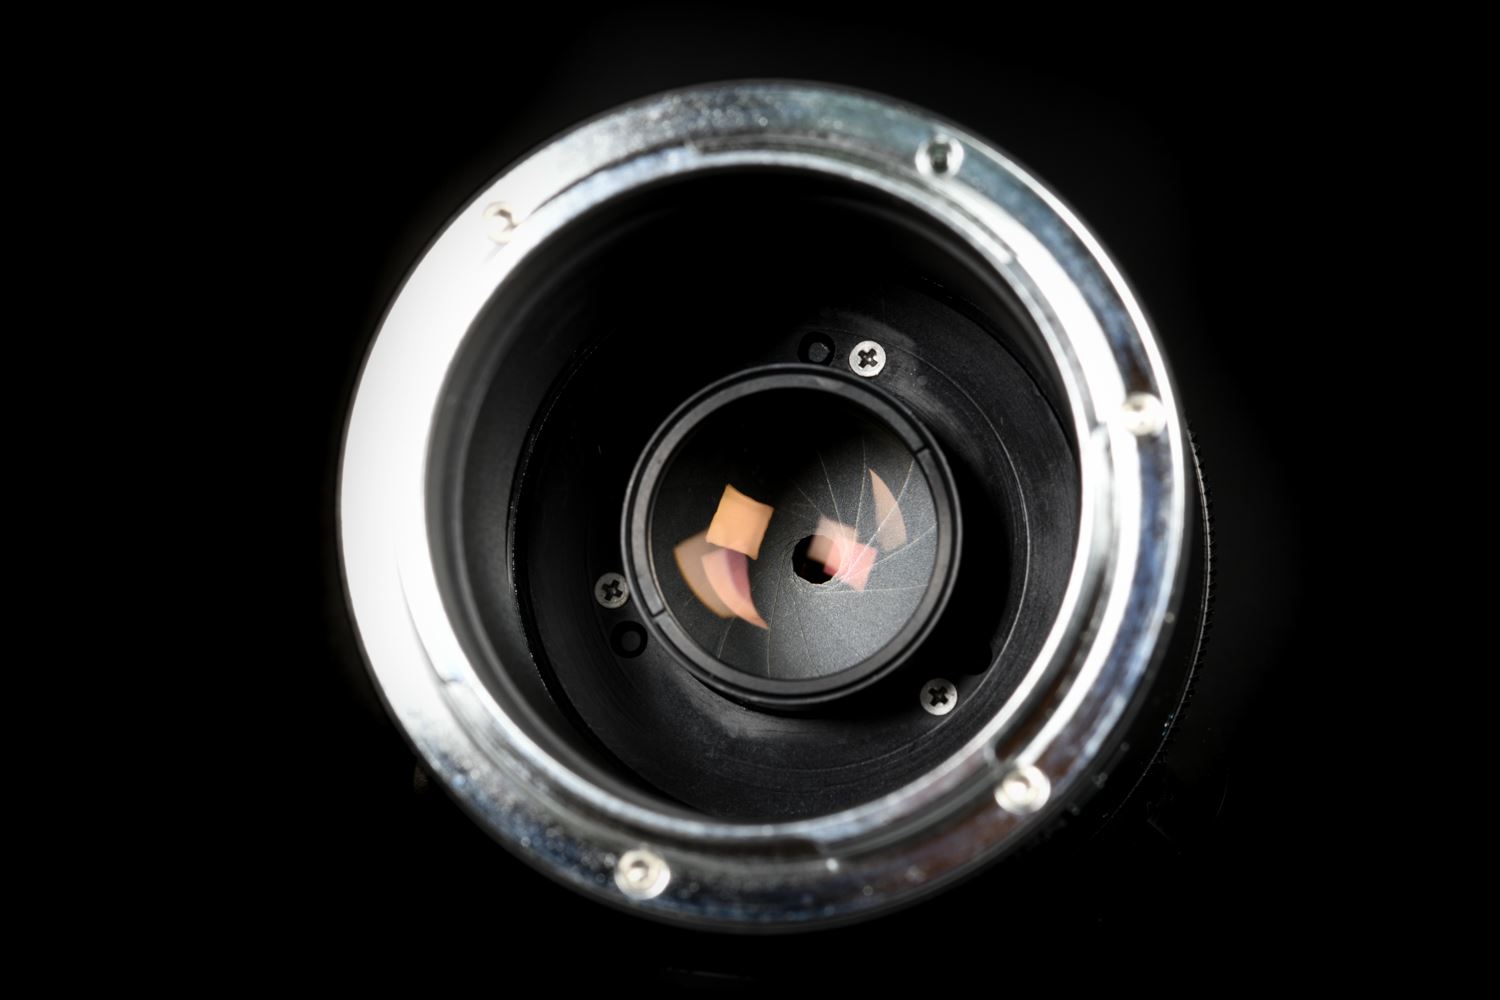 Picture of Meyer Optik Gorlitz Primoplan 58mm f/1.9 Leica L Mount